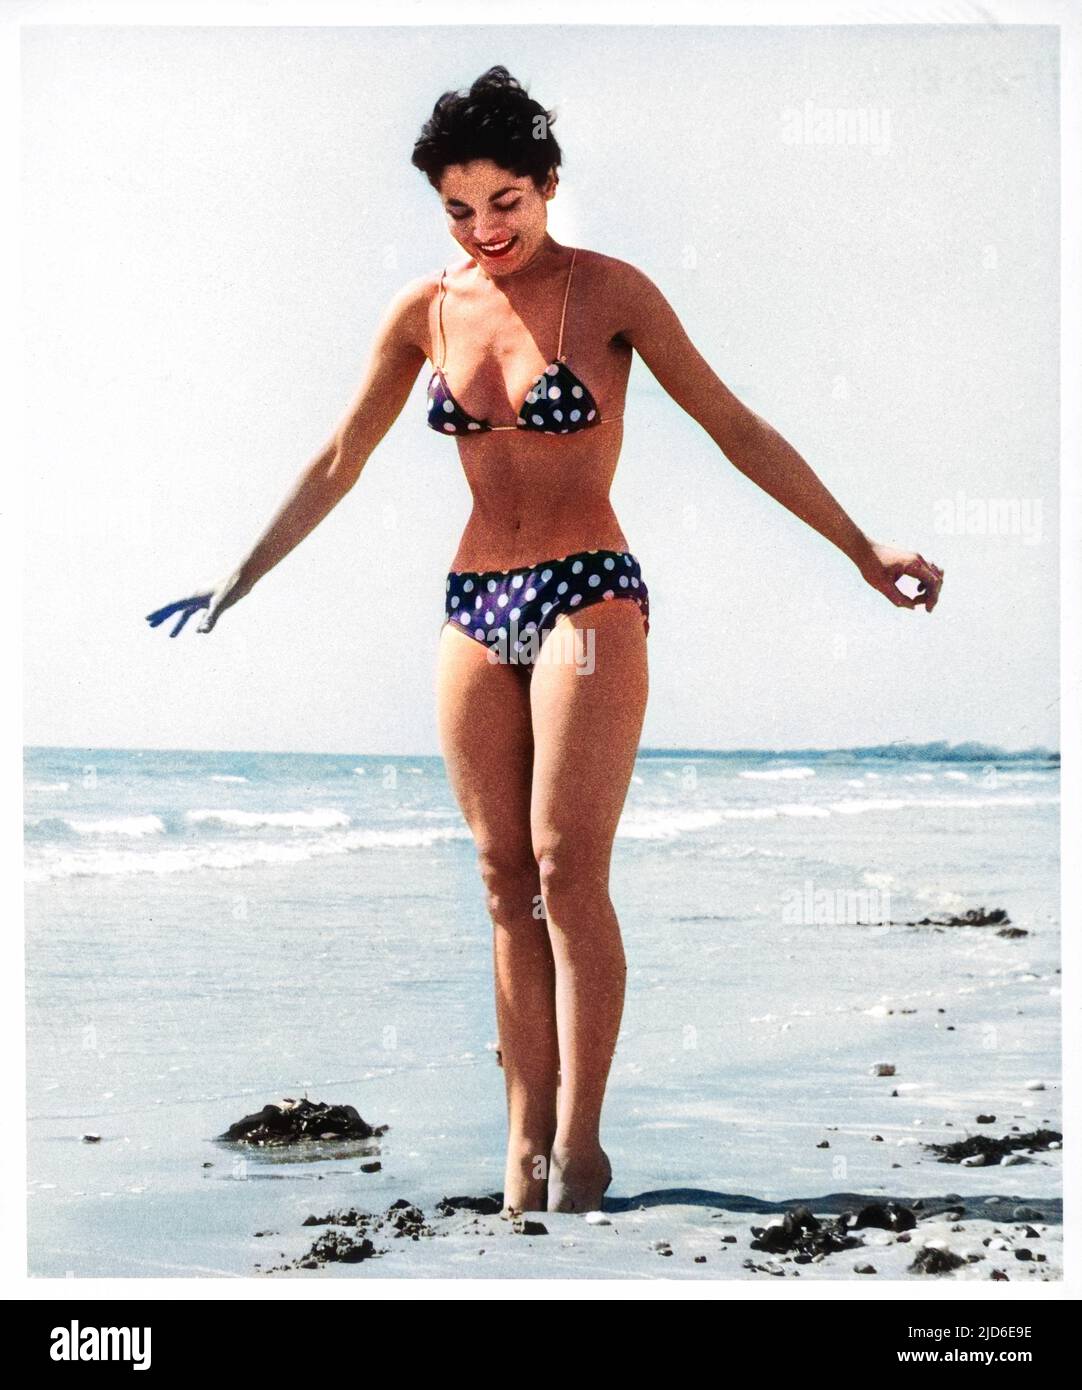 Une jeune femme athlétique, portant un bikini à pois et à fines bretelles spaghetti, s'enfonce dans le sable humide sur une plage. Version colorisée de : 10139497 Date: 1950s Banque D'Images